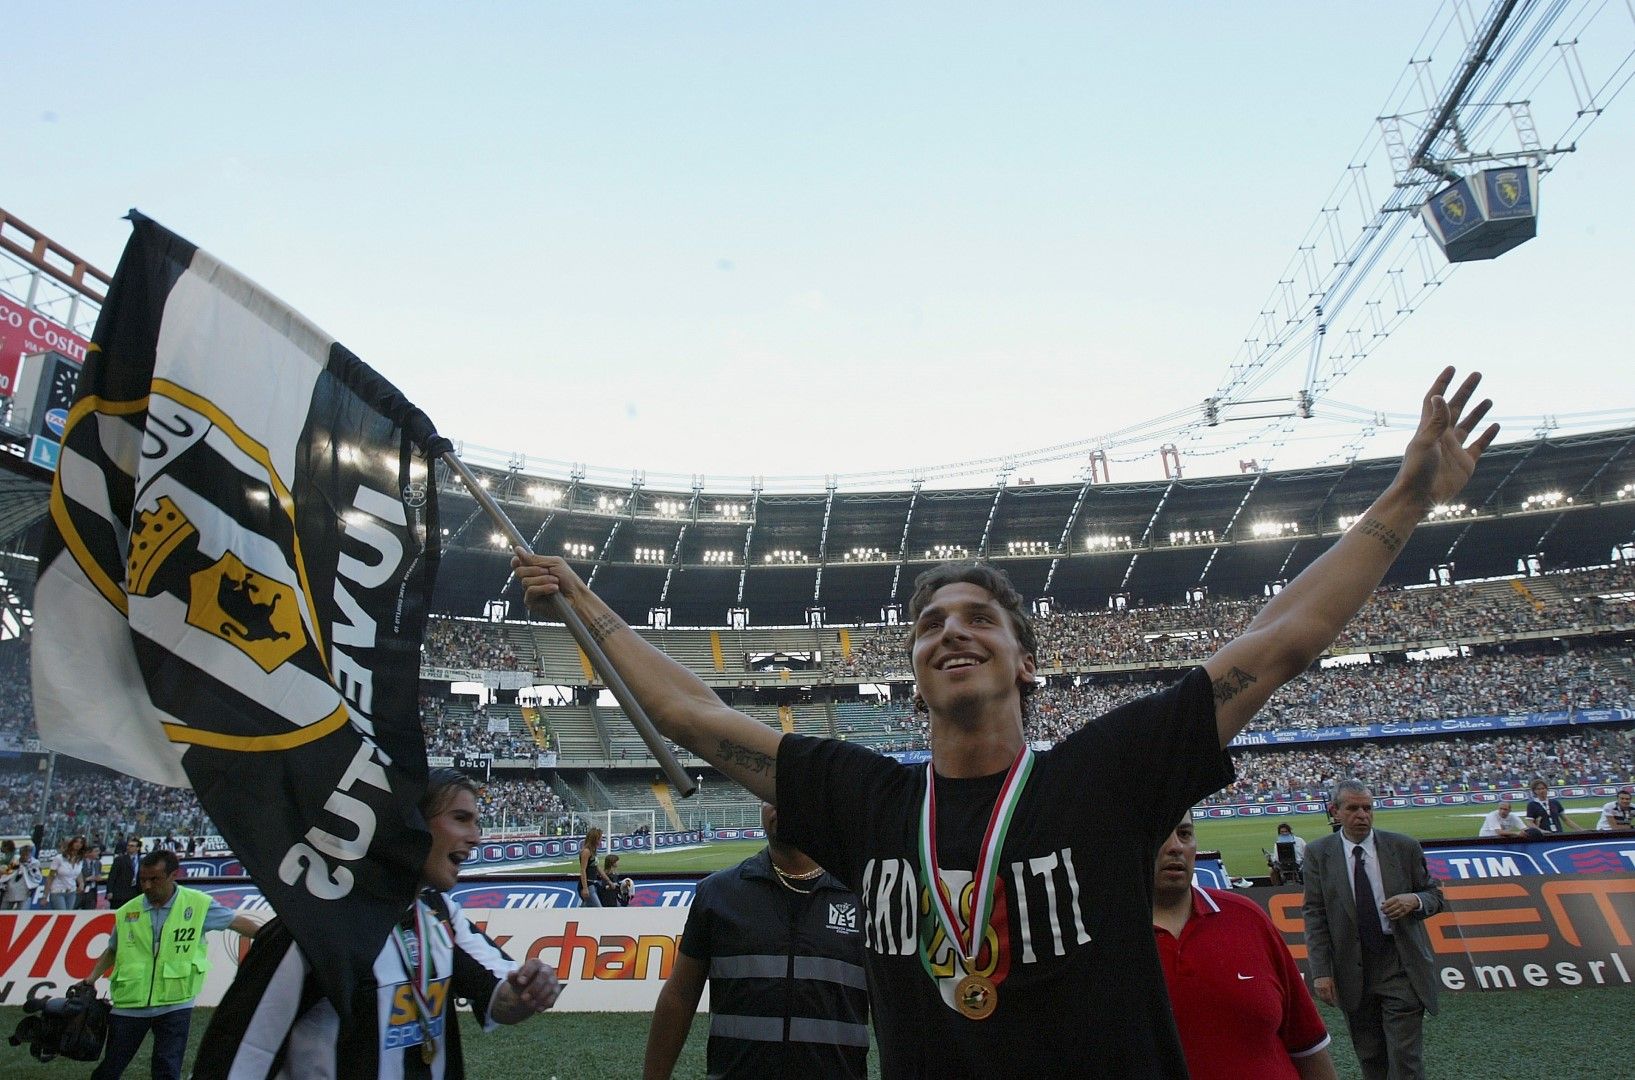 Златан Ибрахимович подписа с "Ювентус" през 2004 г., когато бе сочен за талант №1 в Европа на поста на централния нападател. Едва на 23 години, той стана титуляр в суперотбора на Фабио Капело, спечели две титли и вкара 26 гола в Торино. Но често бе обвиняван, че се крие в големите мачове, особено в Шампионската лига. Двете му титли с "Юве" не се броят официално, защото ги отнеха от клуба. Затова и Серена се води единственият в този списък, станал шампион и с трите гранда.